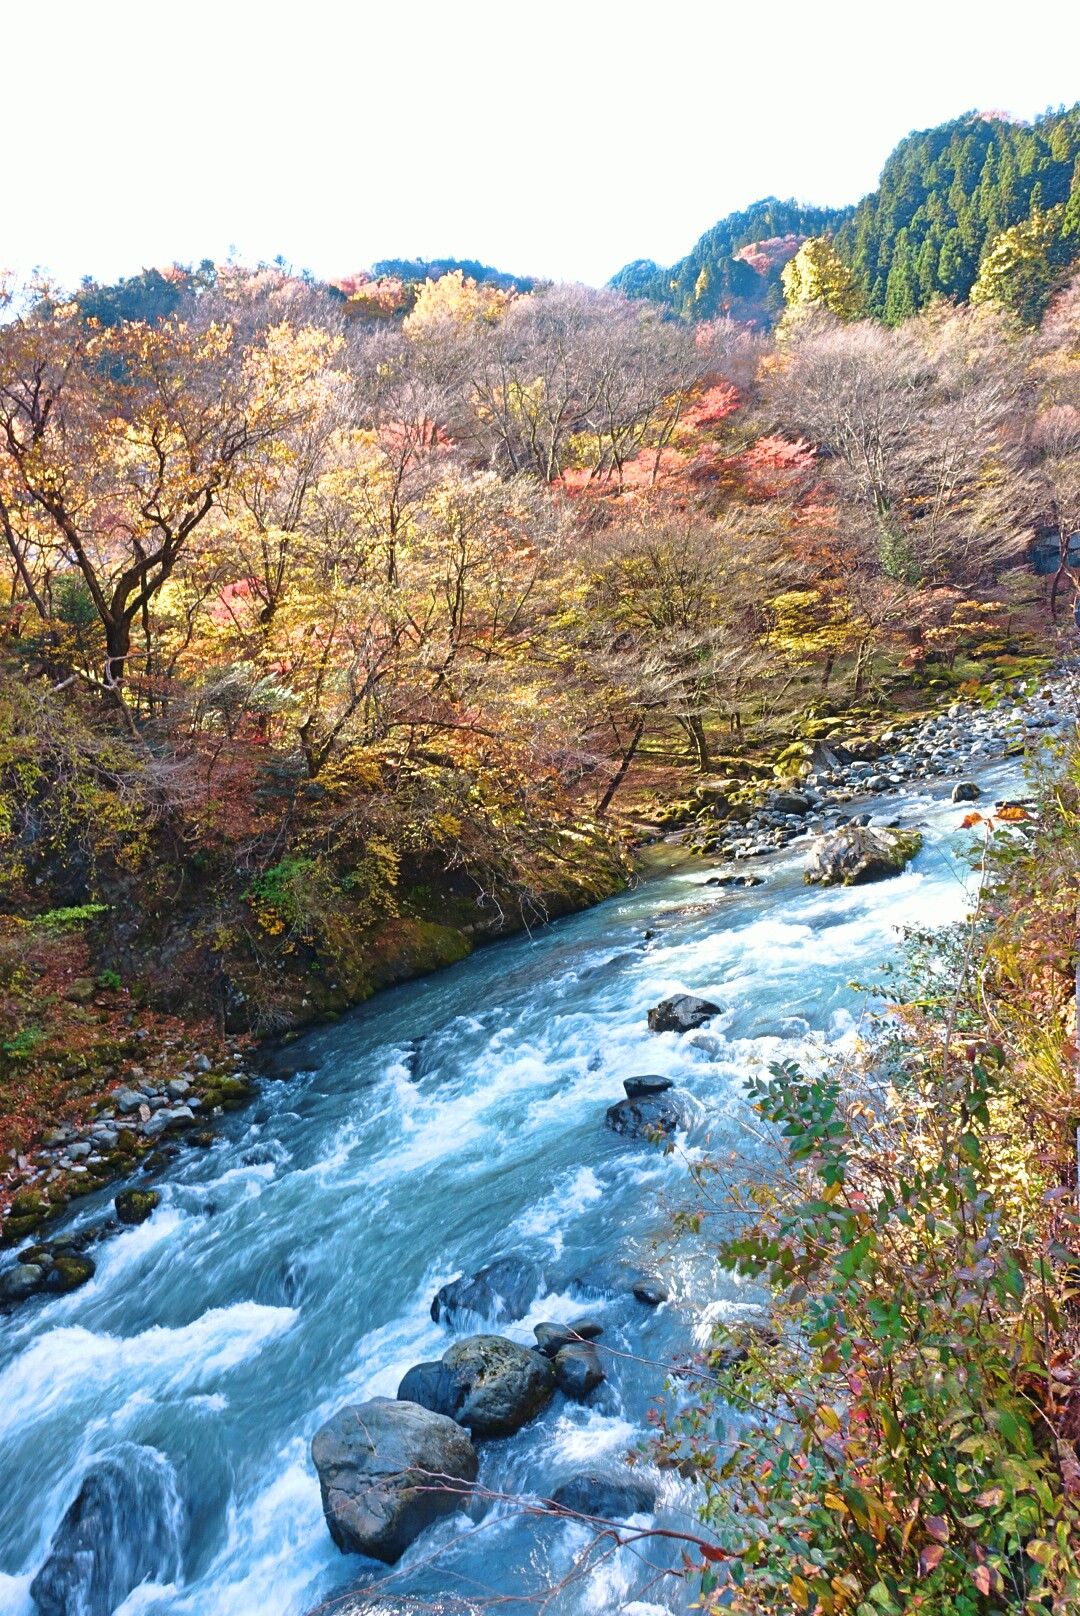 神橋下的大谷川河勢湍急，兩岸都有進入秋天的景緻，邊走邊看美景很悠閒